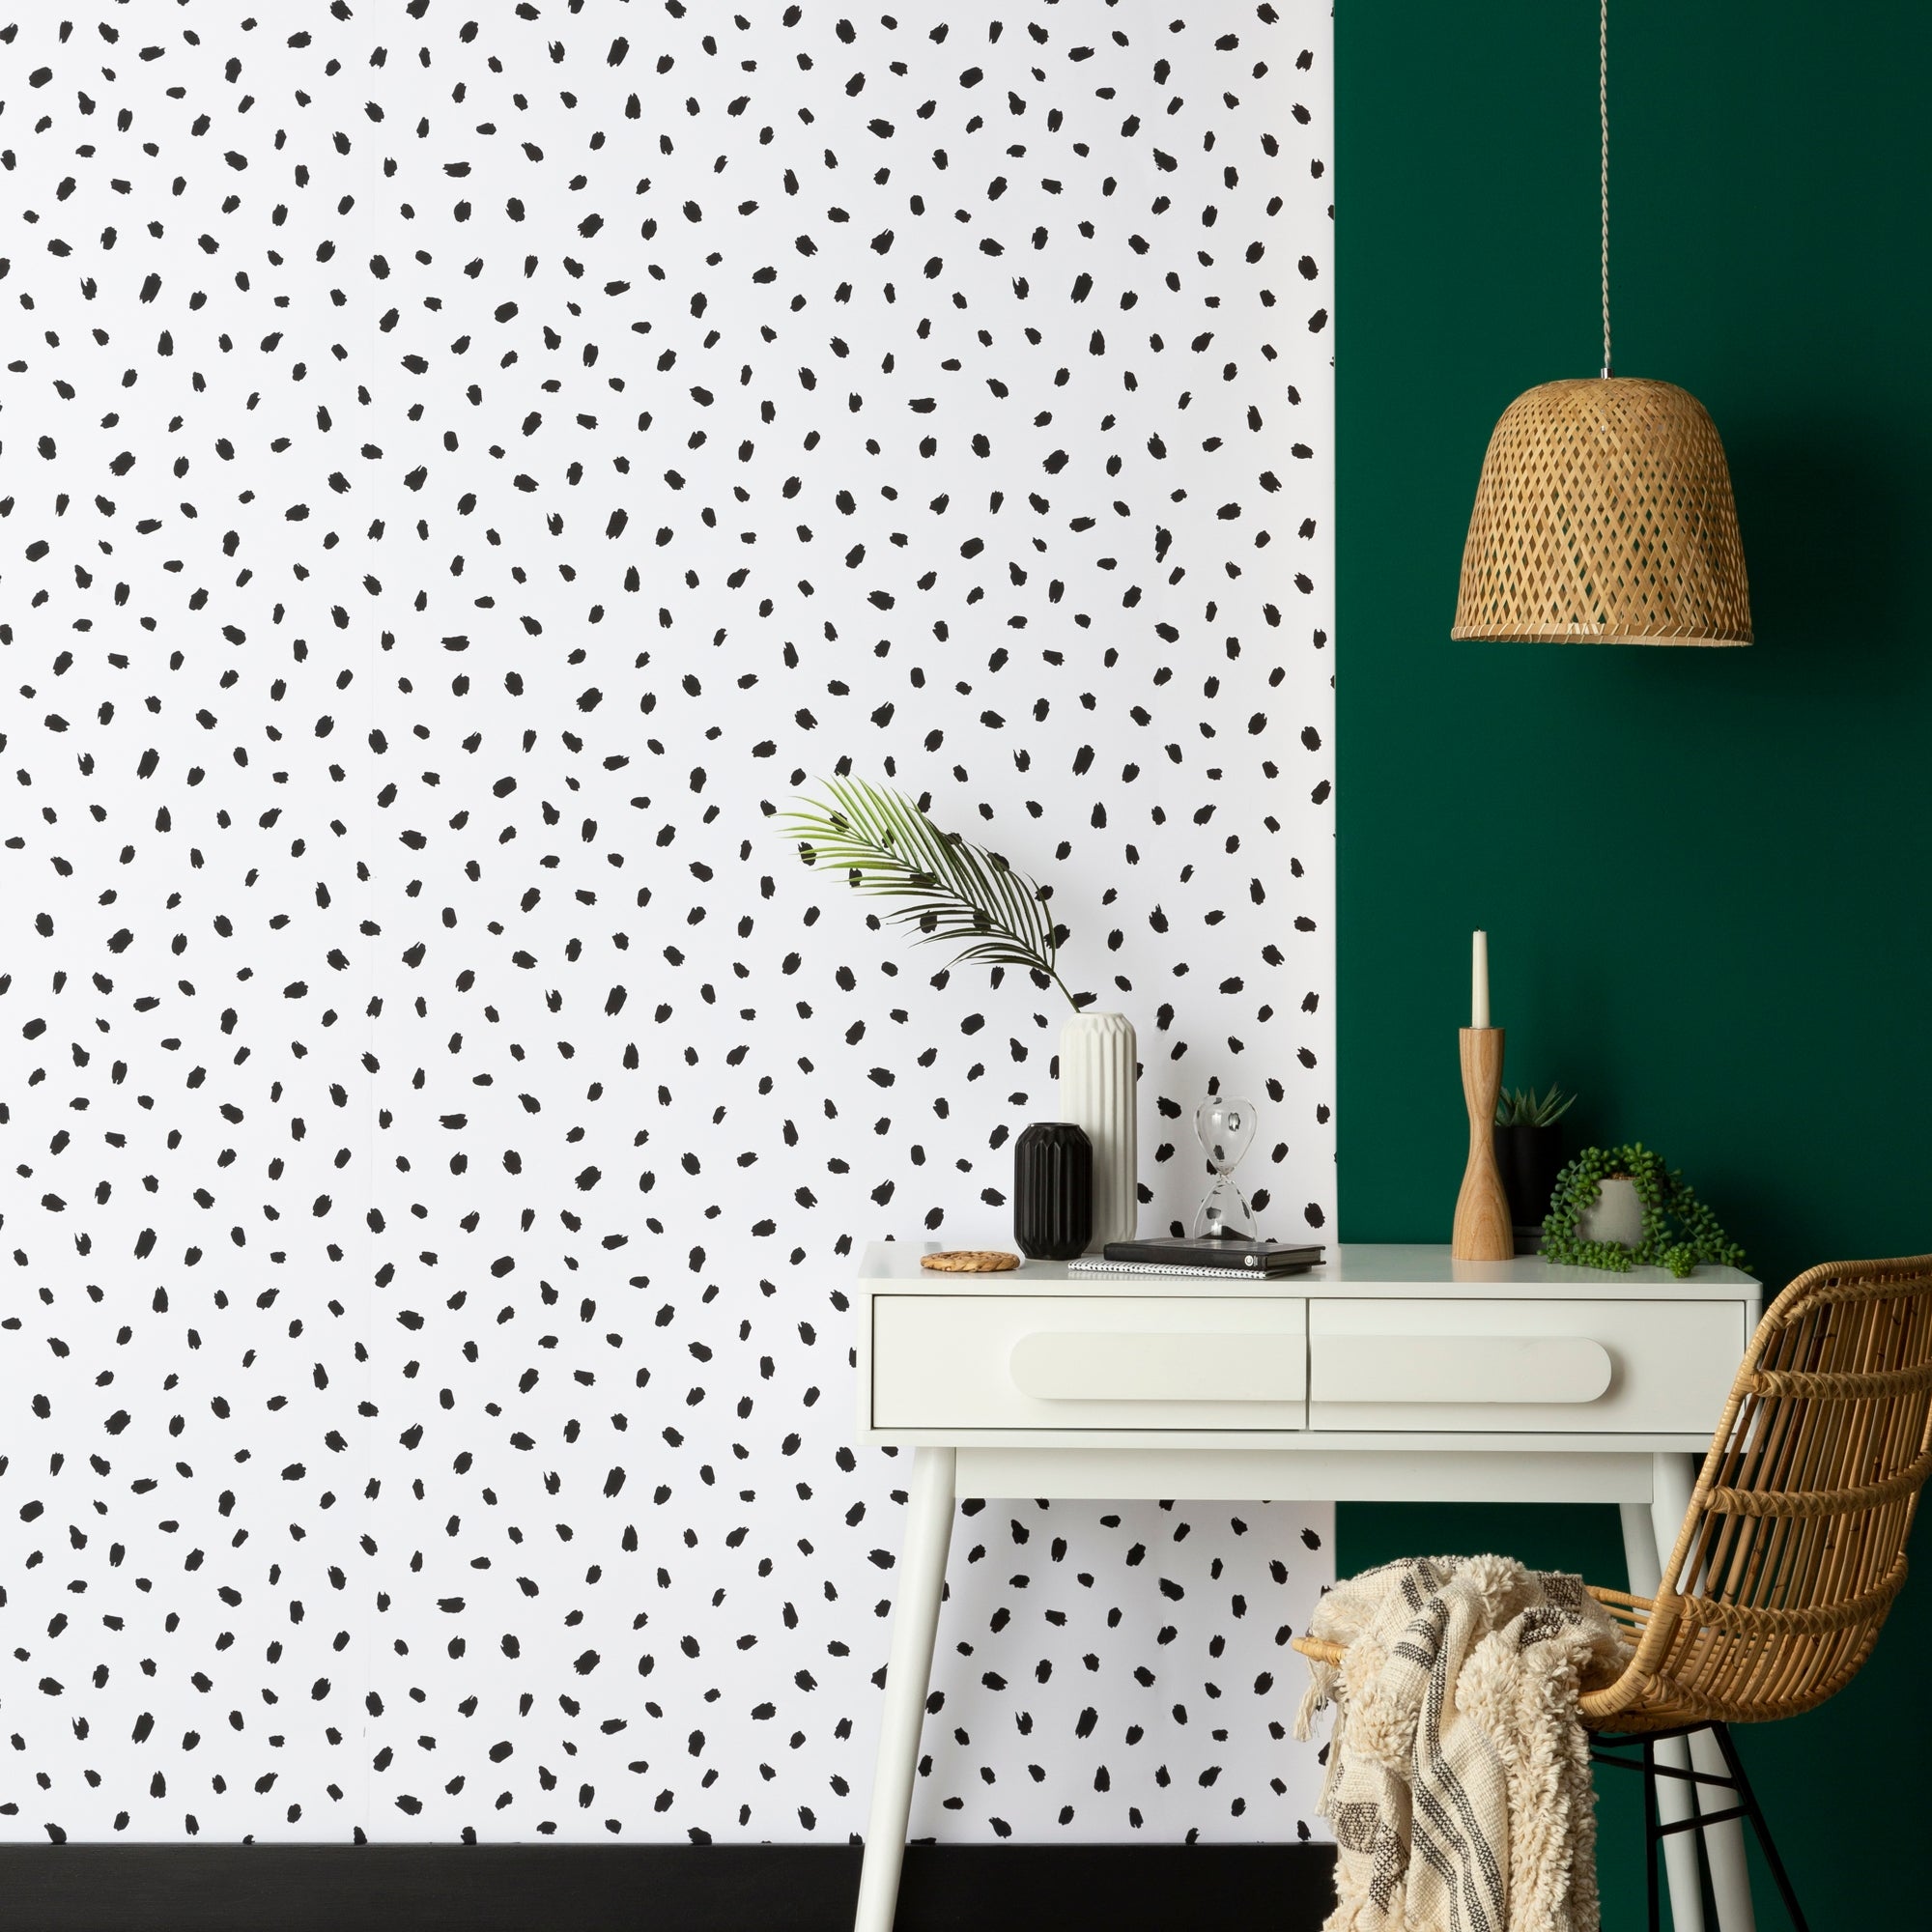 Black Spot Wallpaper Uk - carrotapp